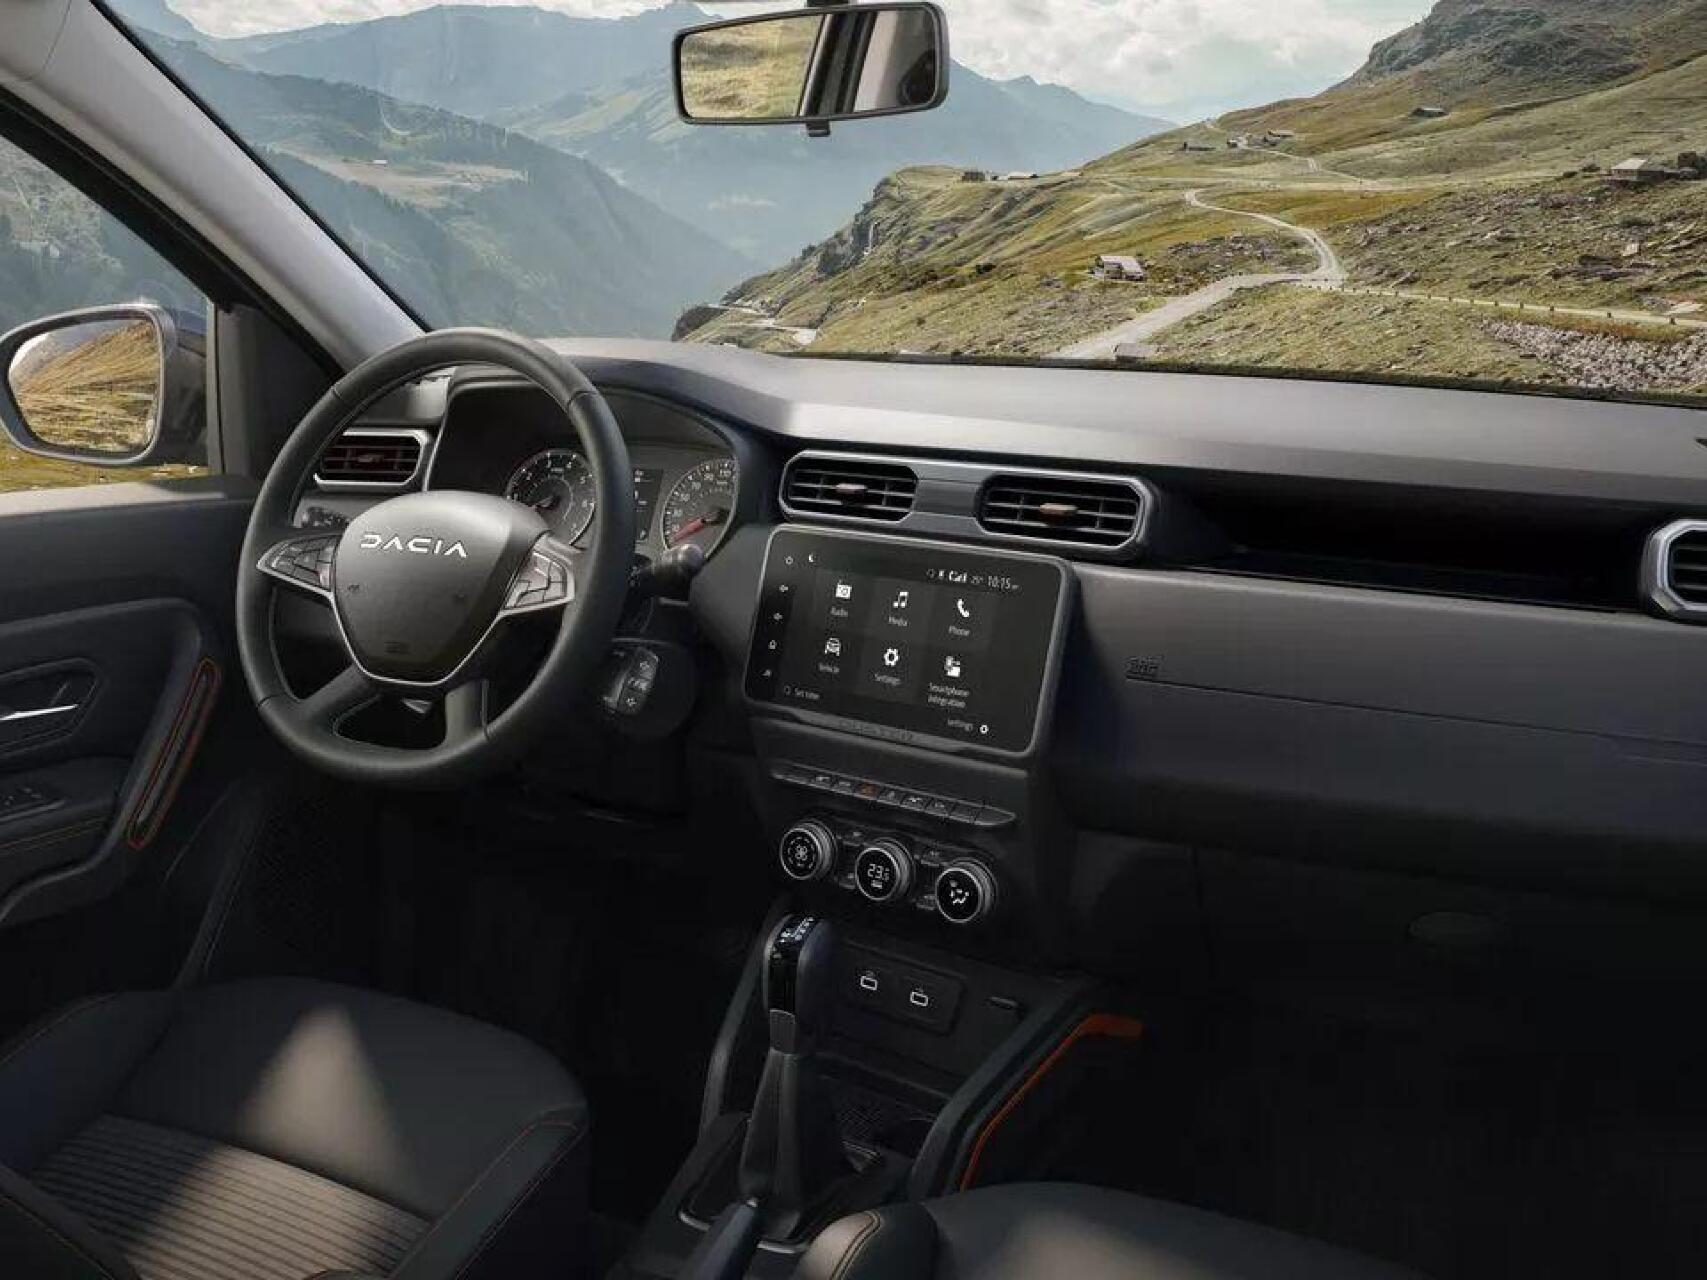 Neuer Look und umfangreiche Ausstattung: Der Dacia Duster Extreme -   Blog